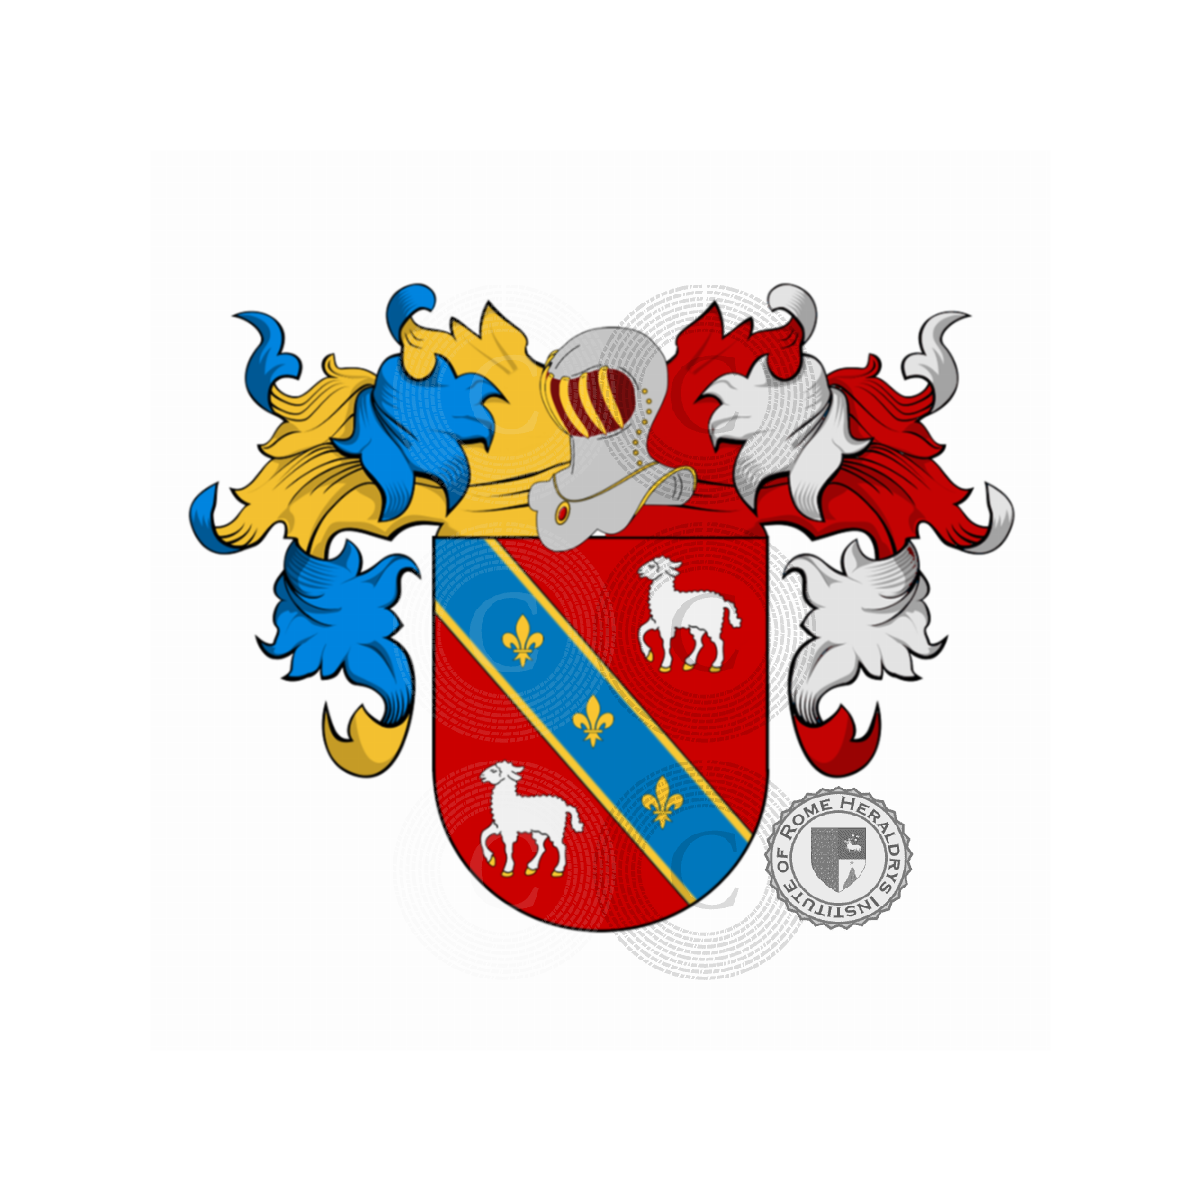 Wappen der FamilieCarneiro